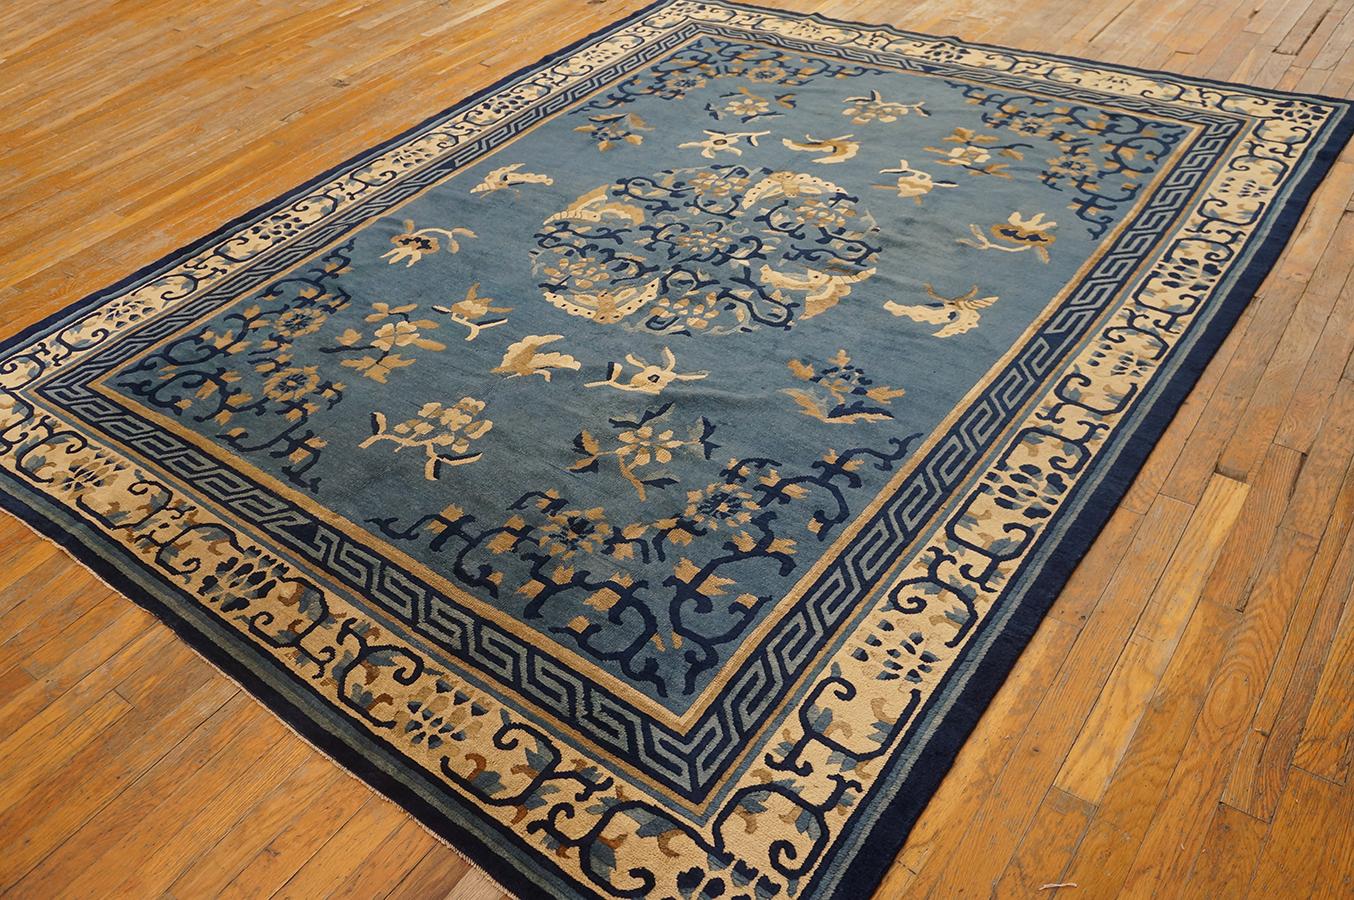 Antique Chinese - Peking rug, size: 7' 0'' x 8' 6''.